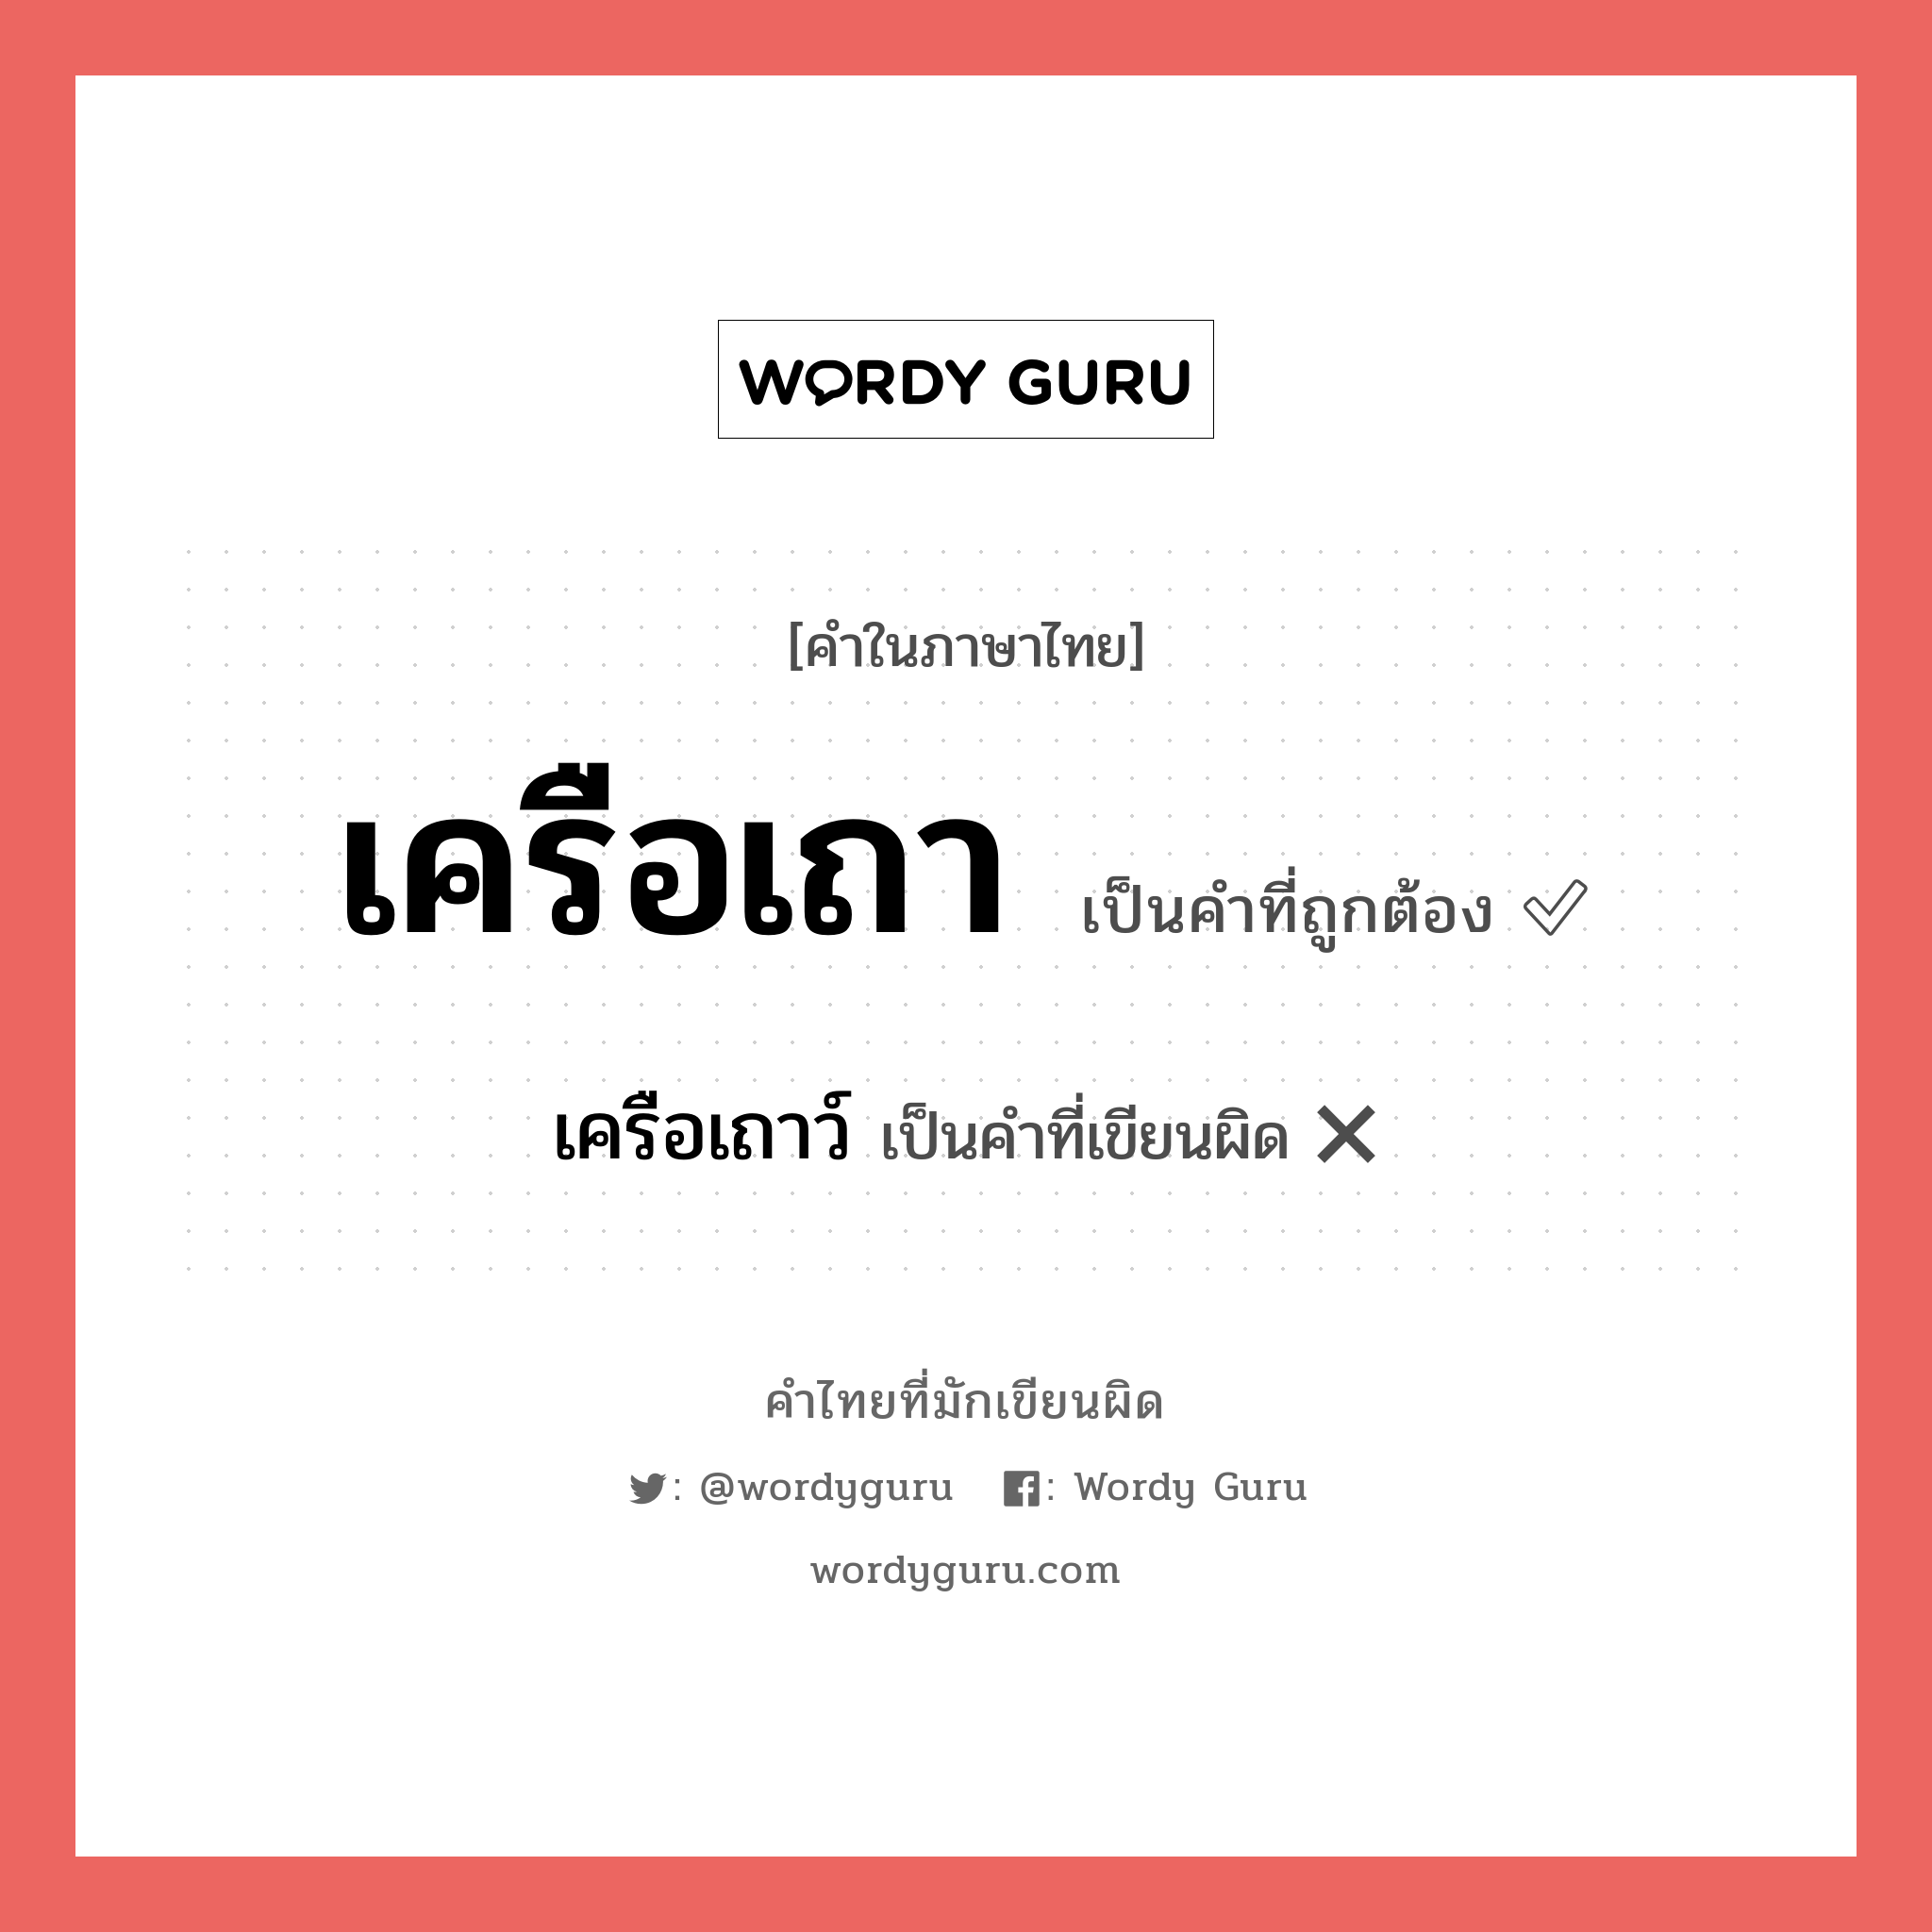 เครือเถาว์ หรือ เครือเถา คำไหนเขียนถูก?, คำในภาษาไทยที่มักเขียนผิด เครือเถาว์ คำที่ผิด ❌ เครือเถา